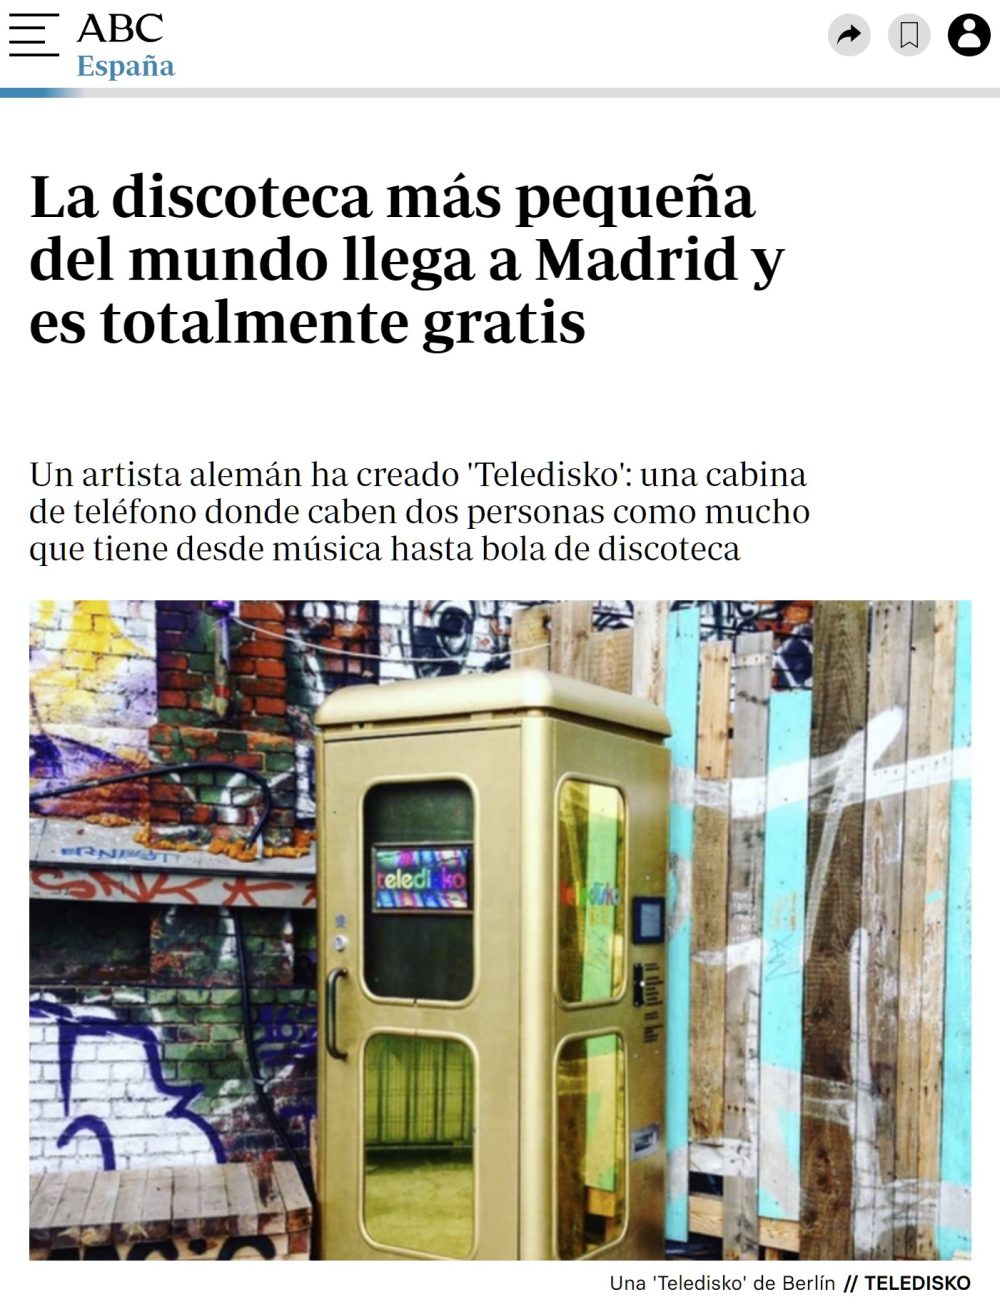 La discoteca más pequeña se llama "Teledisko", está en Madrid y... es muy pequeña